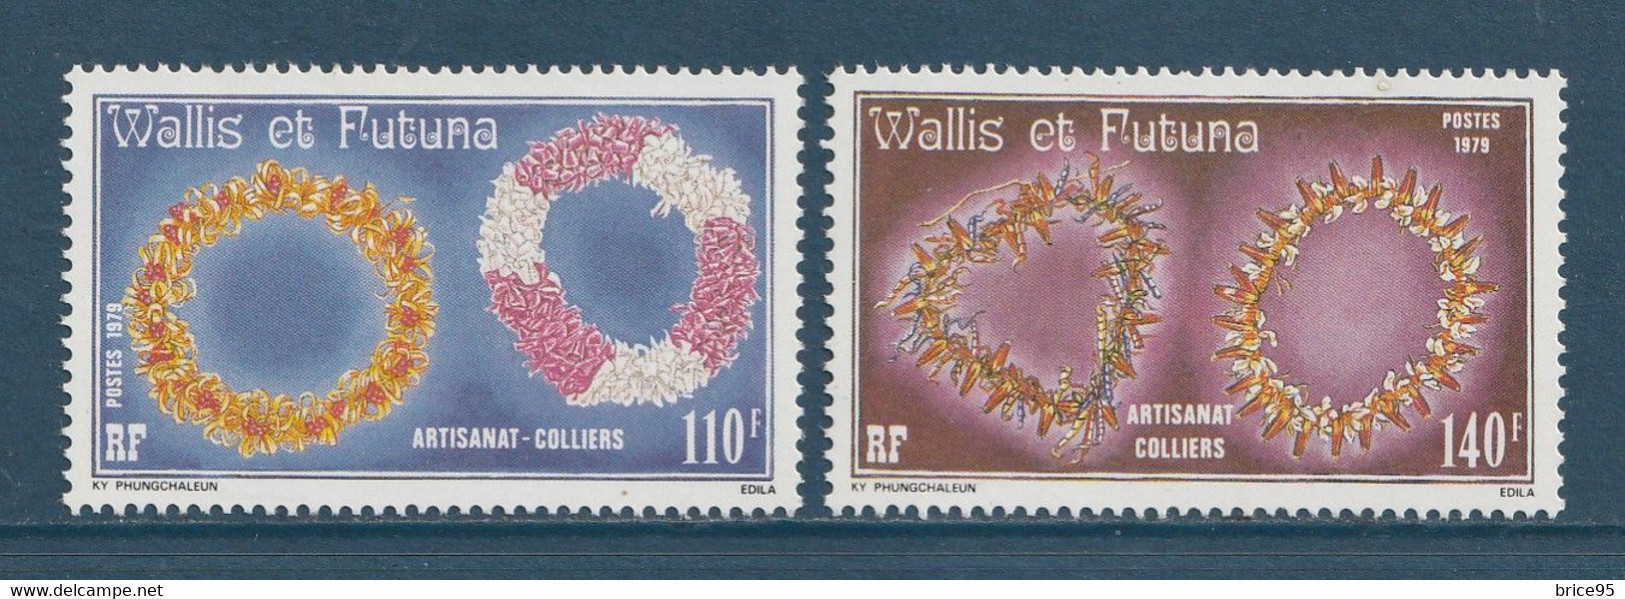 Wallis Et Futuna - YT N° 241 Et 242 * - Neuf Avec Charnière - 1979 - Unused Stamps